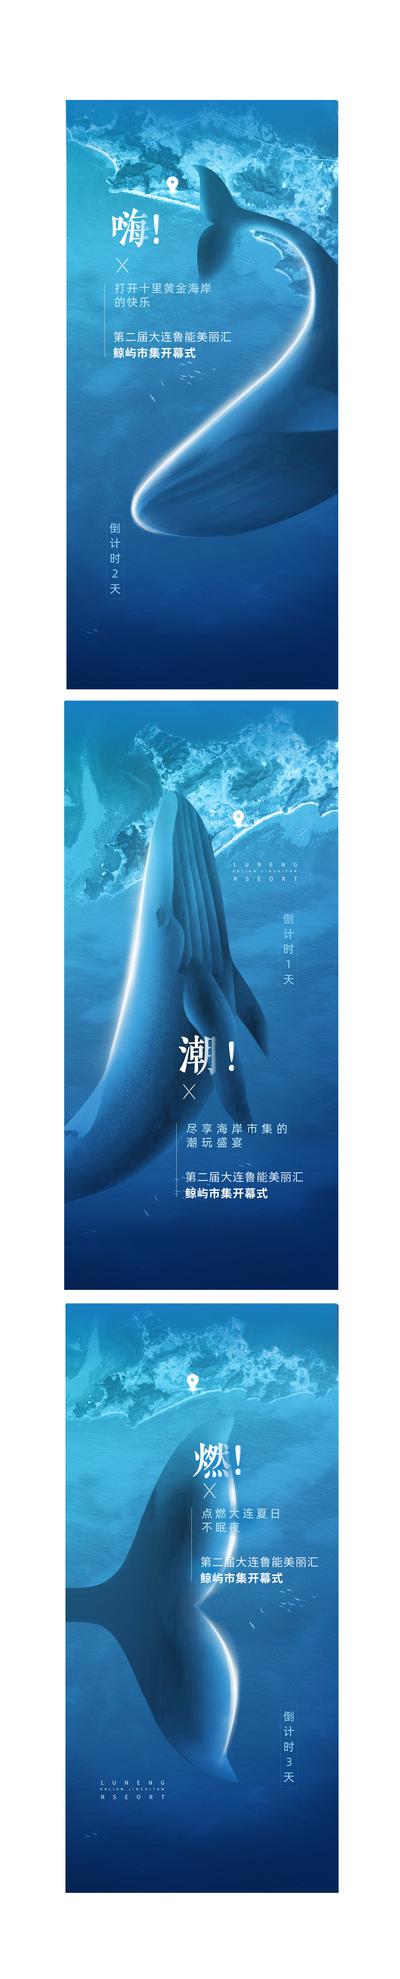 南门网 海报 鲸鱼 倒计时 海洋 高端 创意 大气